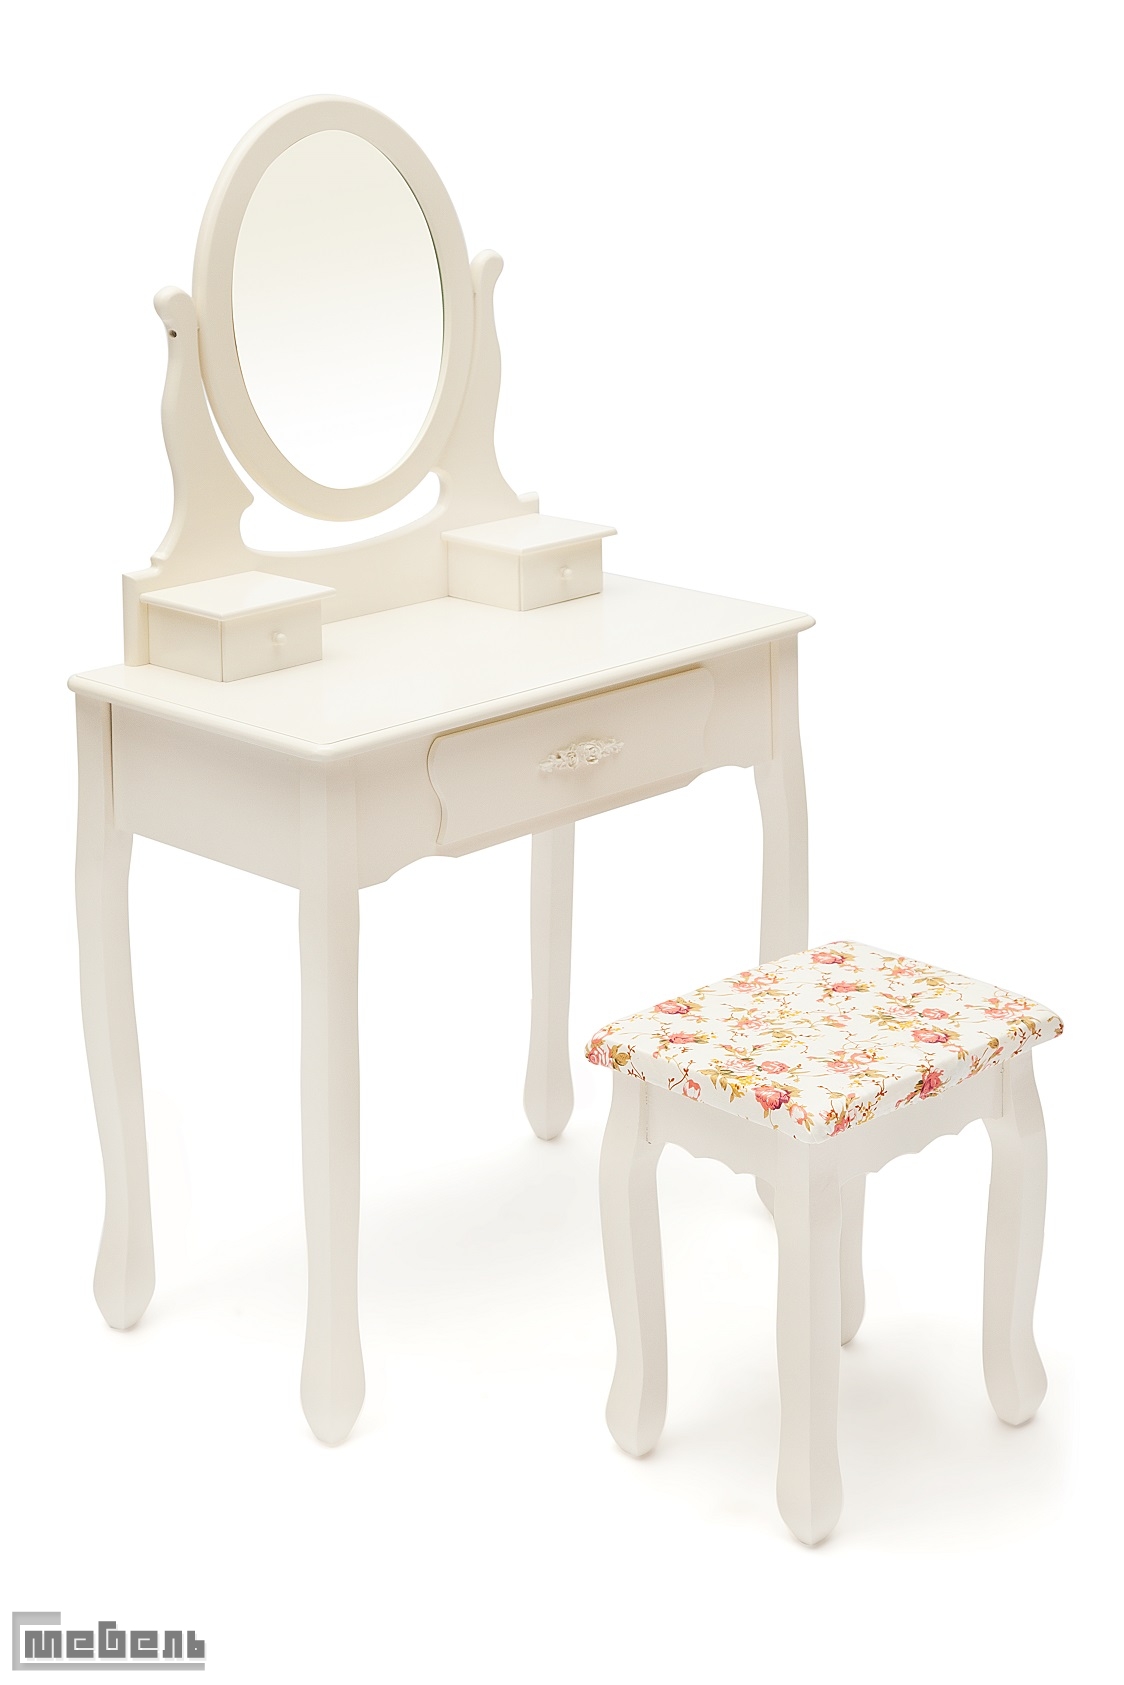 Туалетный стол с пуфом "Coiffeuse" (Куэфюз) "HX15-075" (butter white (слоновая кость))